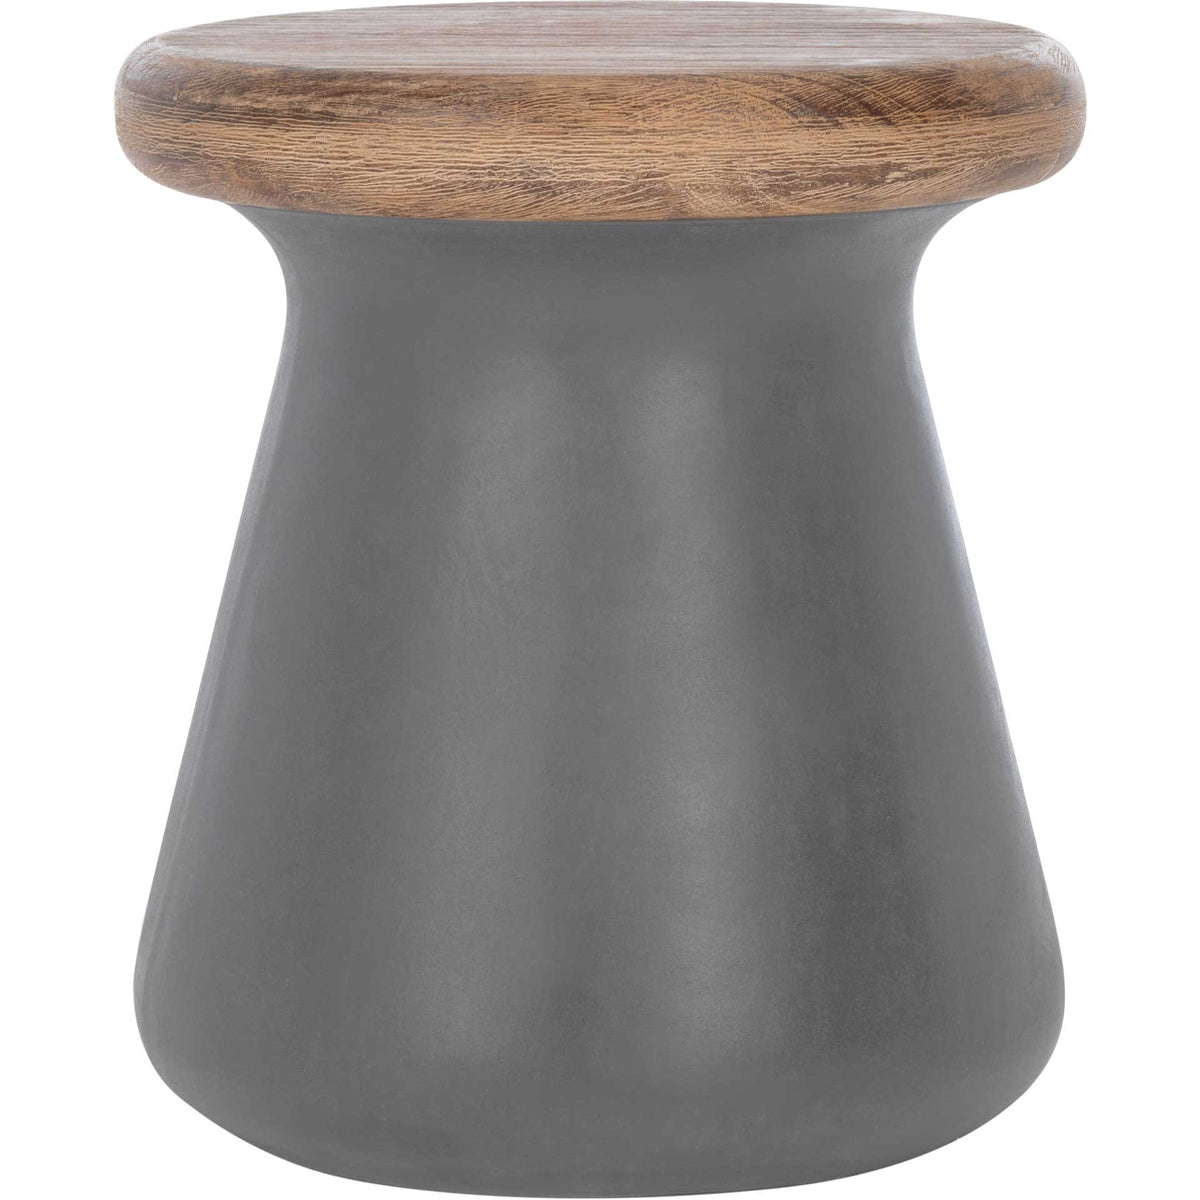 Burgess Modern Concrete Round Accent Table Dark Gray